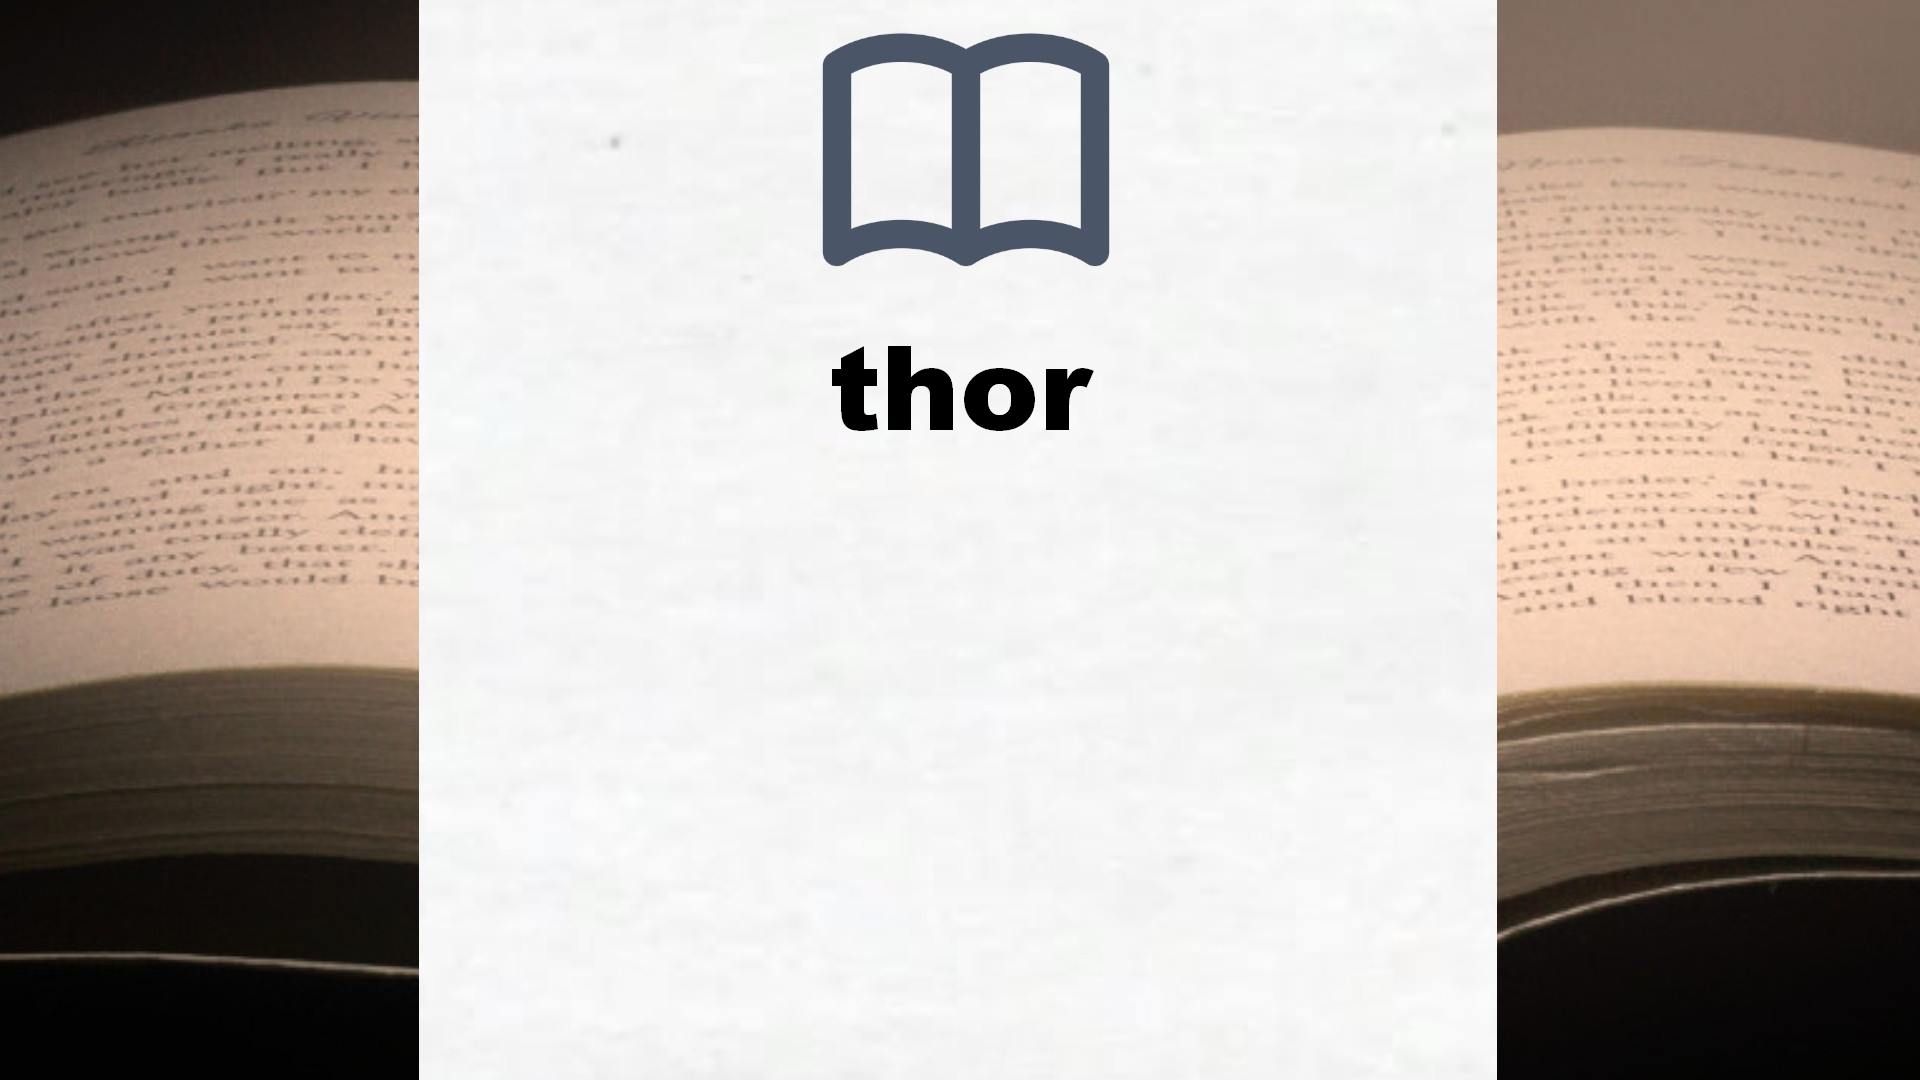 Libros sobre thor